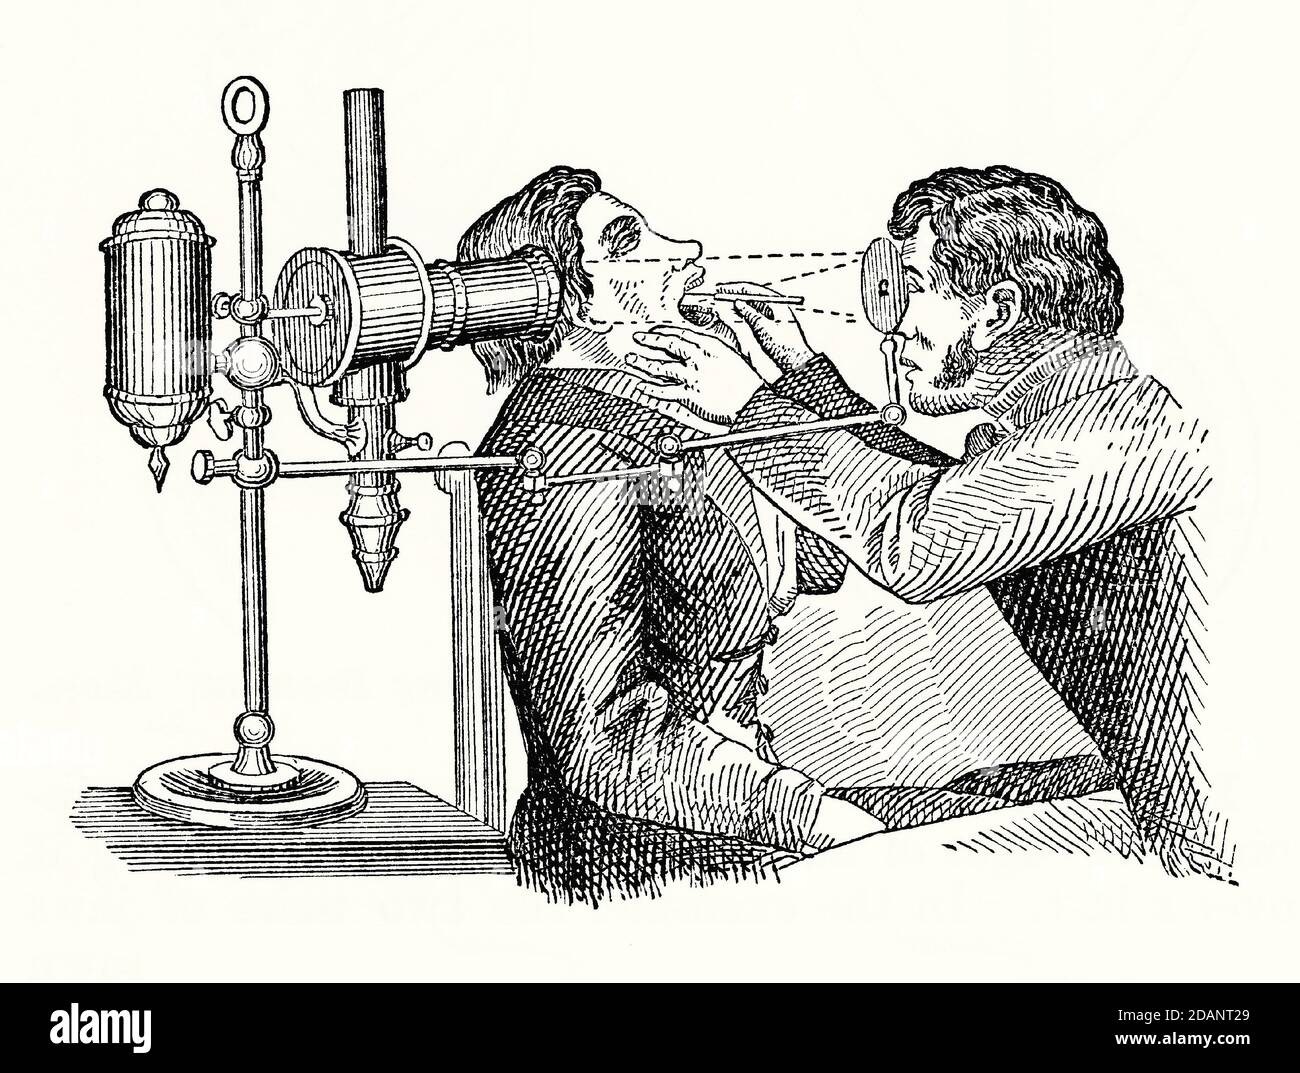 Una vecchia incisione di un paziente che ha la sua laringe esaminata da un medico usando un laringoscopio. E 'da un libro di meccanica vittoriana del 1880. Laryngoscopy è endoscopia della laringe, parte della gola per vedere le pieghe vocali e la glottite. Molte versioni dell'apparecchio furono inventate nel 1800. Quello illustrato è un laringoscopio Tieman. Una sorgente di luce artificiale (sinistra) brilla sullo specchio concavo che il medico tiene e viene riflessa verso il basso sulla bocca del paziente su uno specchio più piccolo all'estremità dello strumento inserito nella bocca, illuminando l'area per l'ispezione. Foto Stock